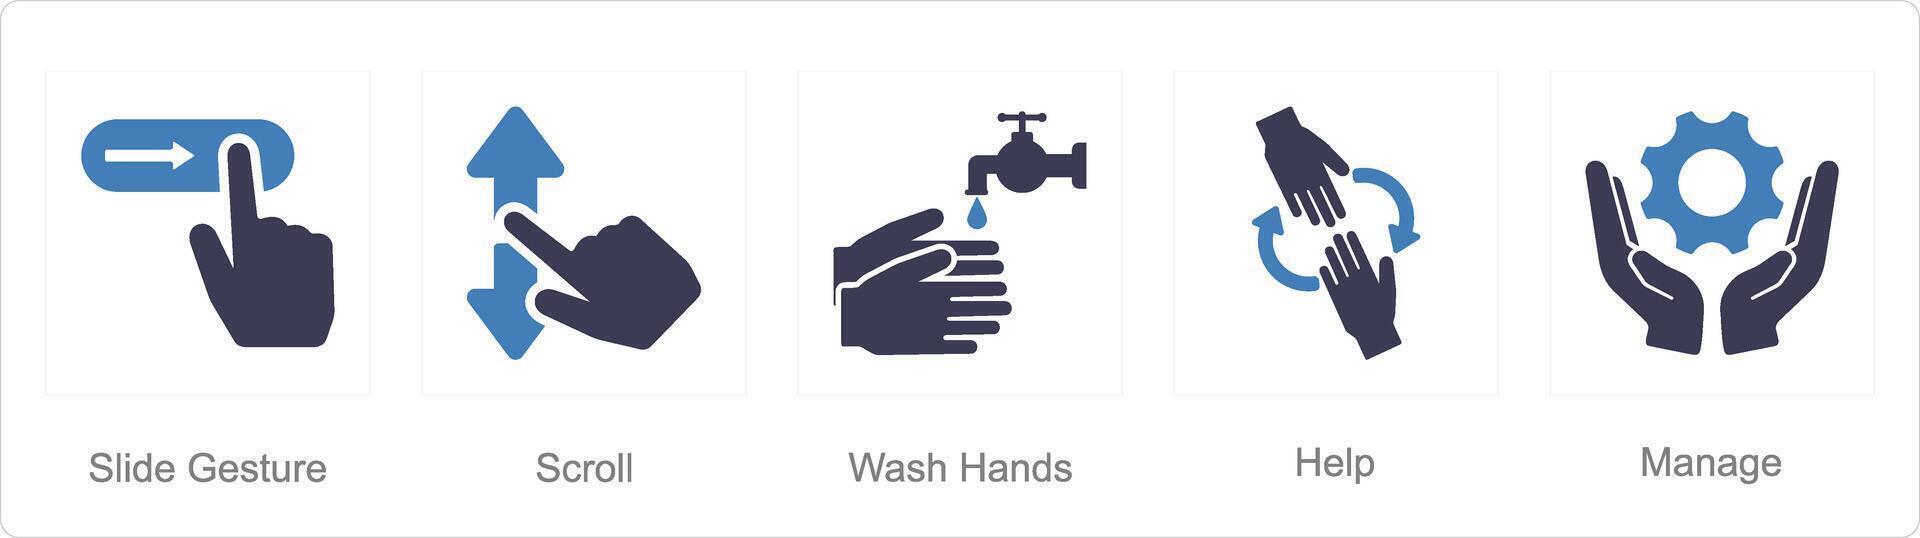 un' impostato di 5 mani icone come diapositiva gesti, scorrere, lavare mani vettore